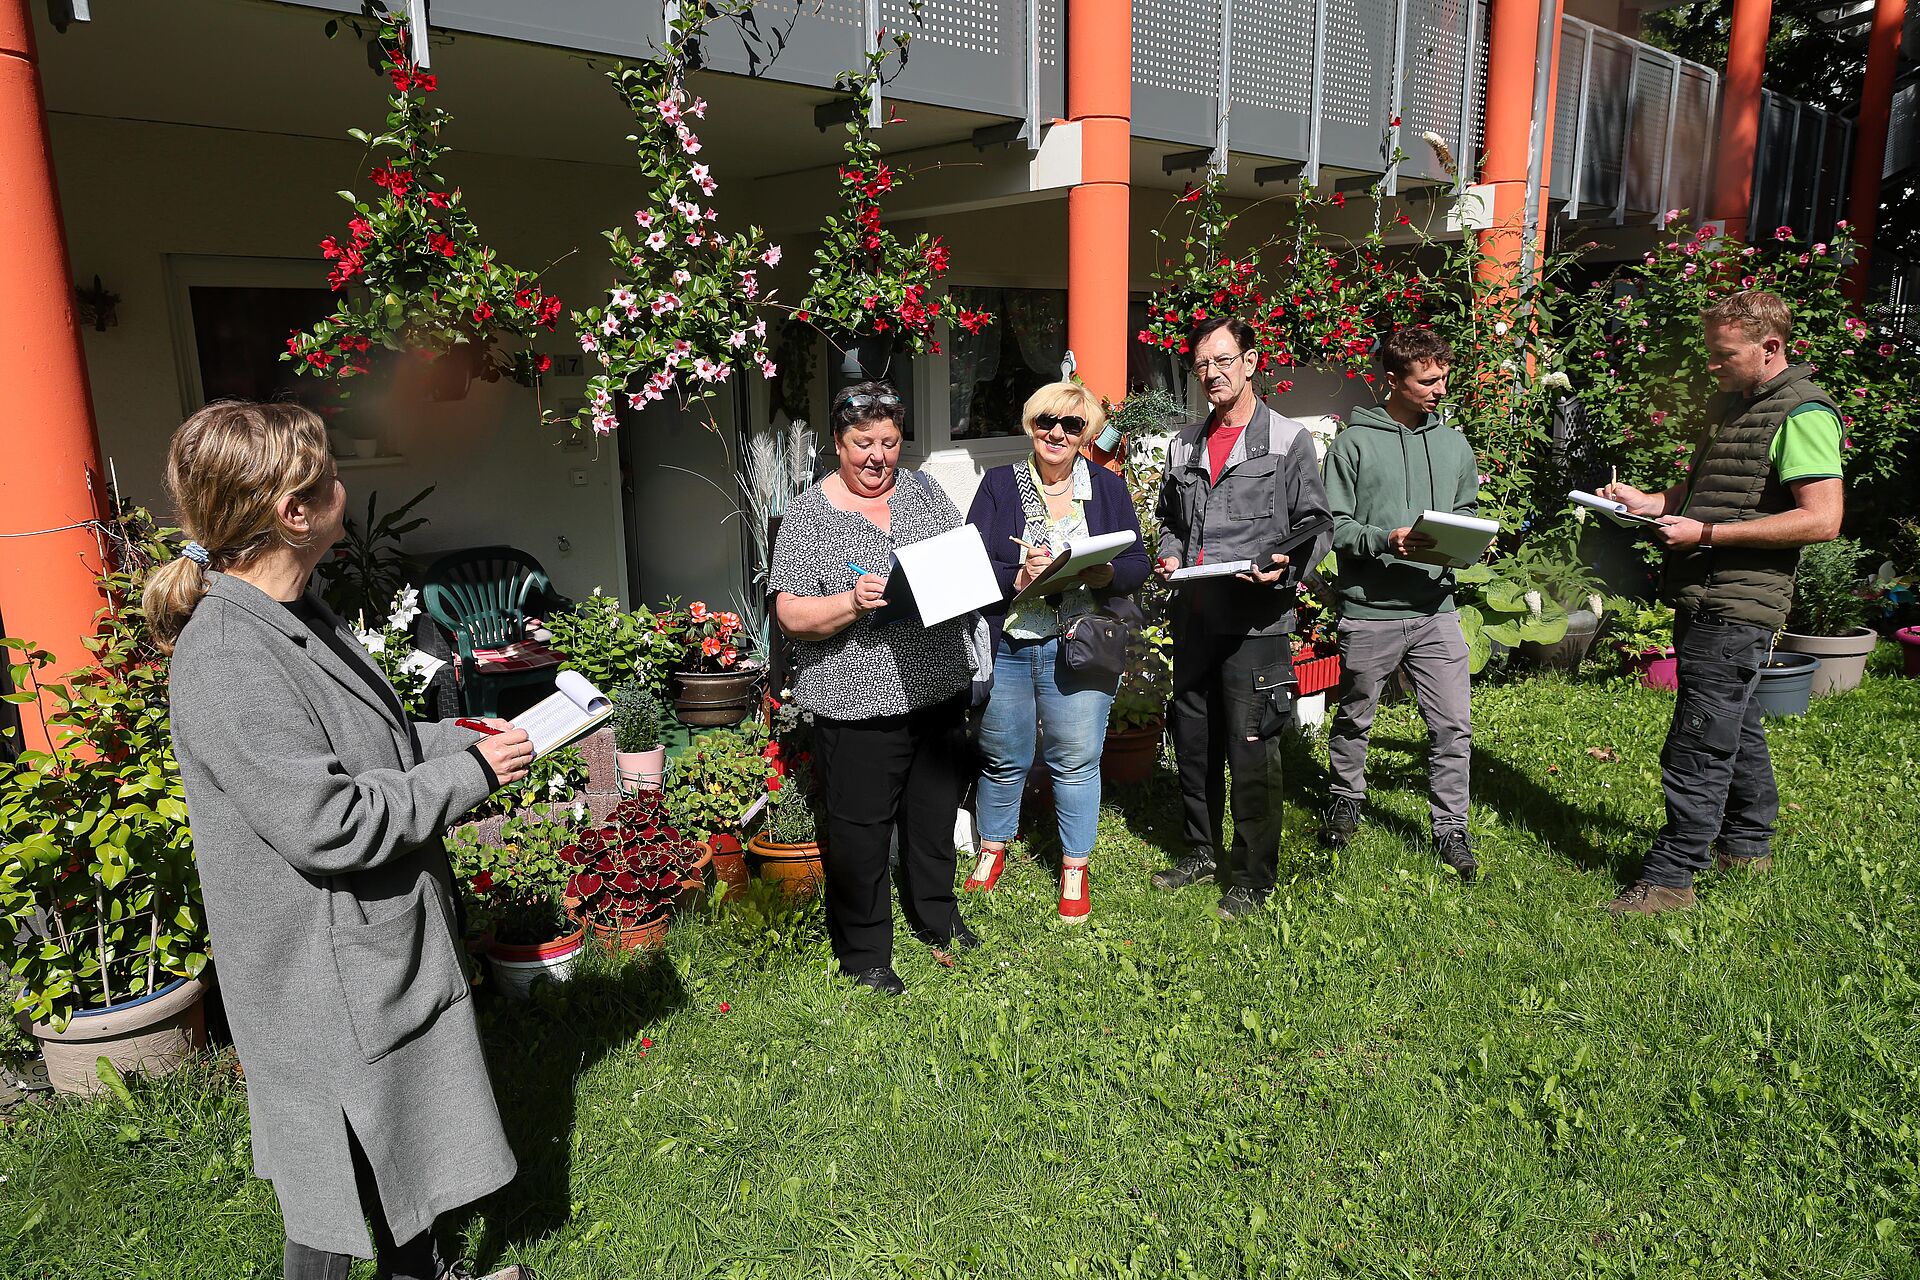 Eine Jury aus mehreren Menschen bewertet die üppige Blütenpracht der bepflanzten Terrassentöpfe in einem Wohnhaus